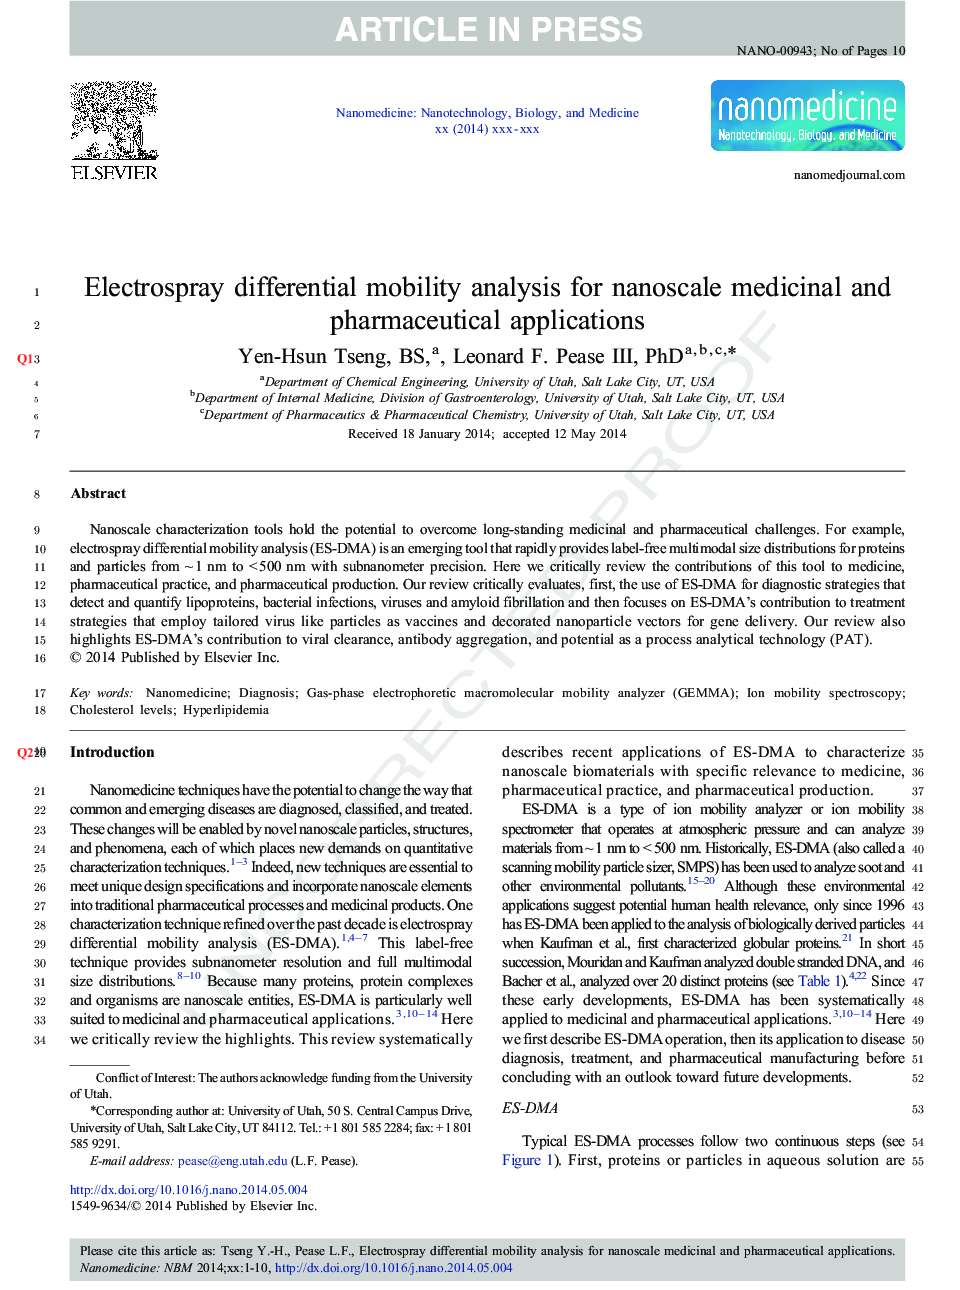 تجزیه و تحلیل تحرک دیفرانسیل الکترو اسپری برای کاربردهای دارویی و دارویی نانو 